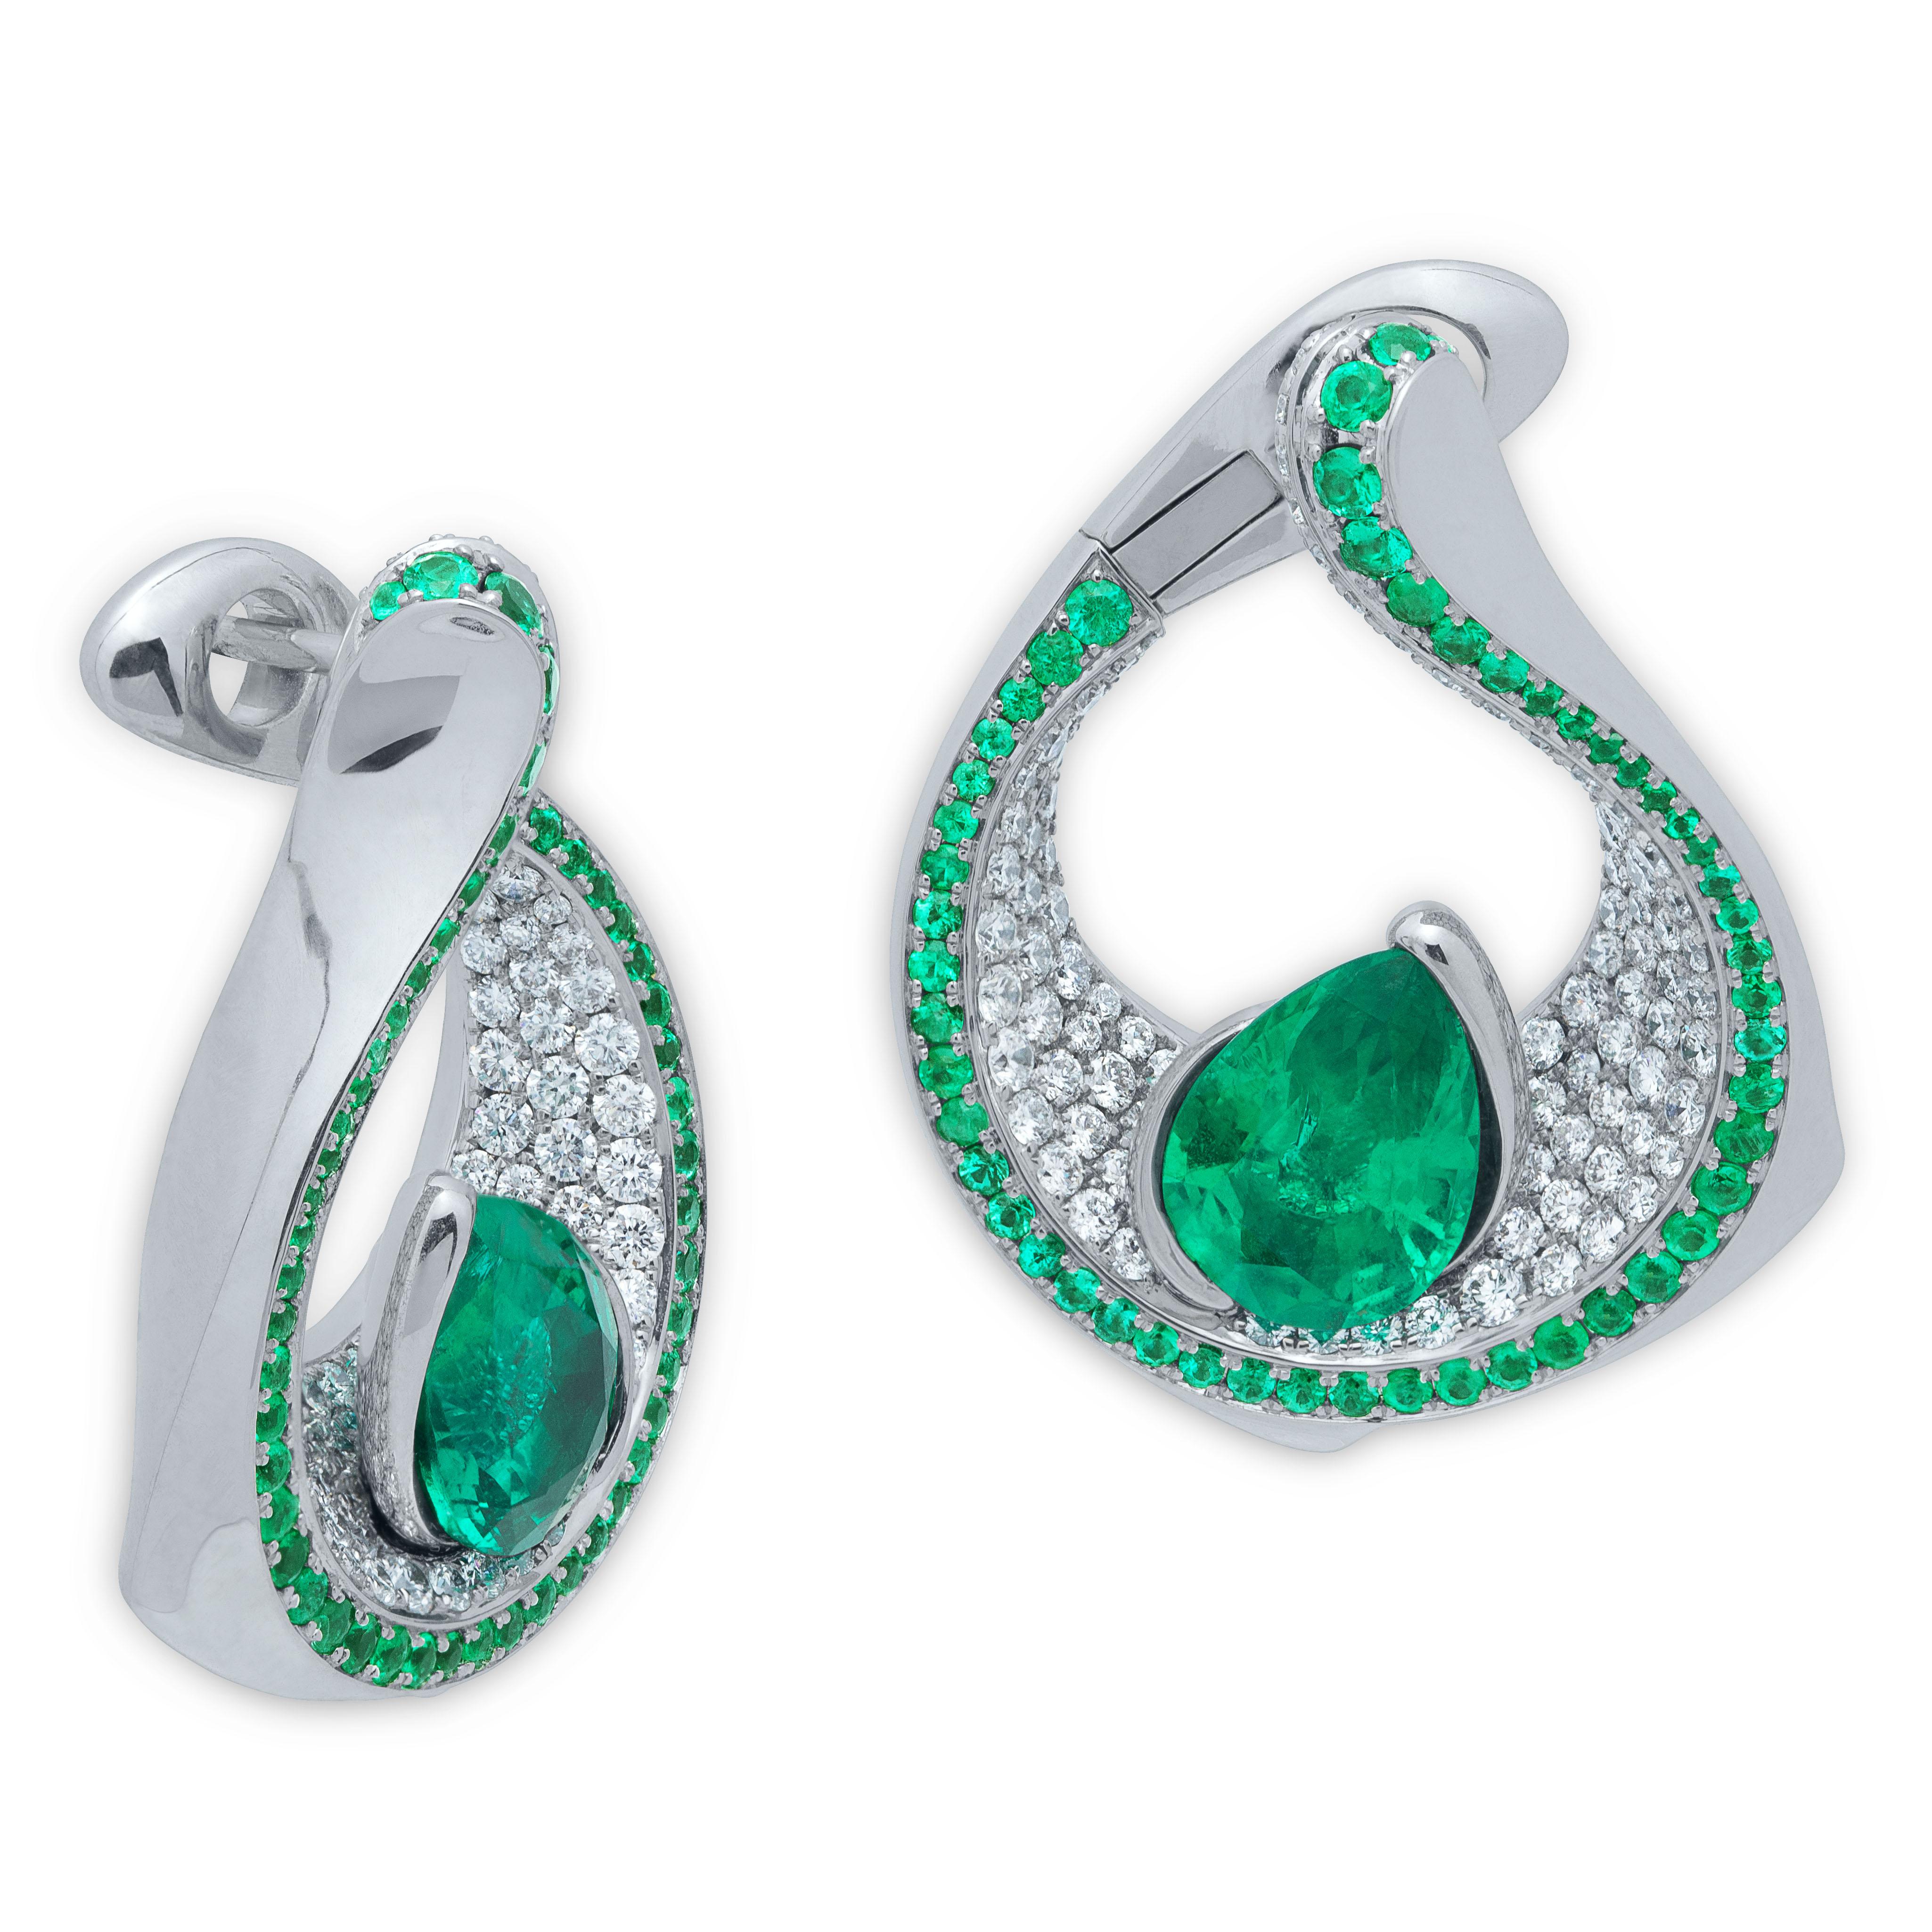 Ohrringe mit Smaragd in Birnenform, 4,22 Karat Diamanten, Smaragde, 18 Karat Weißgold
Die kontrastierenden Farben sind immer auffällig. Diese neuen Ohrringe sind eines von ihnen. Auf einem Schneeweißplateau aus 240 Diamanten mit einem Gewicht von